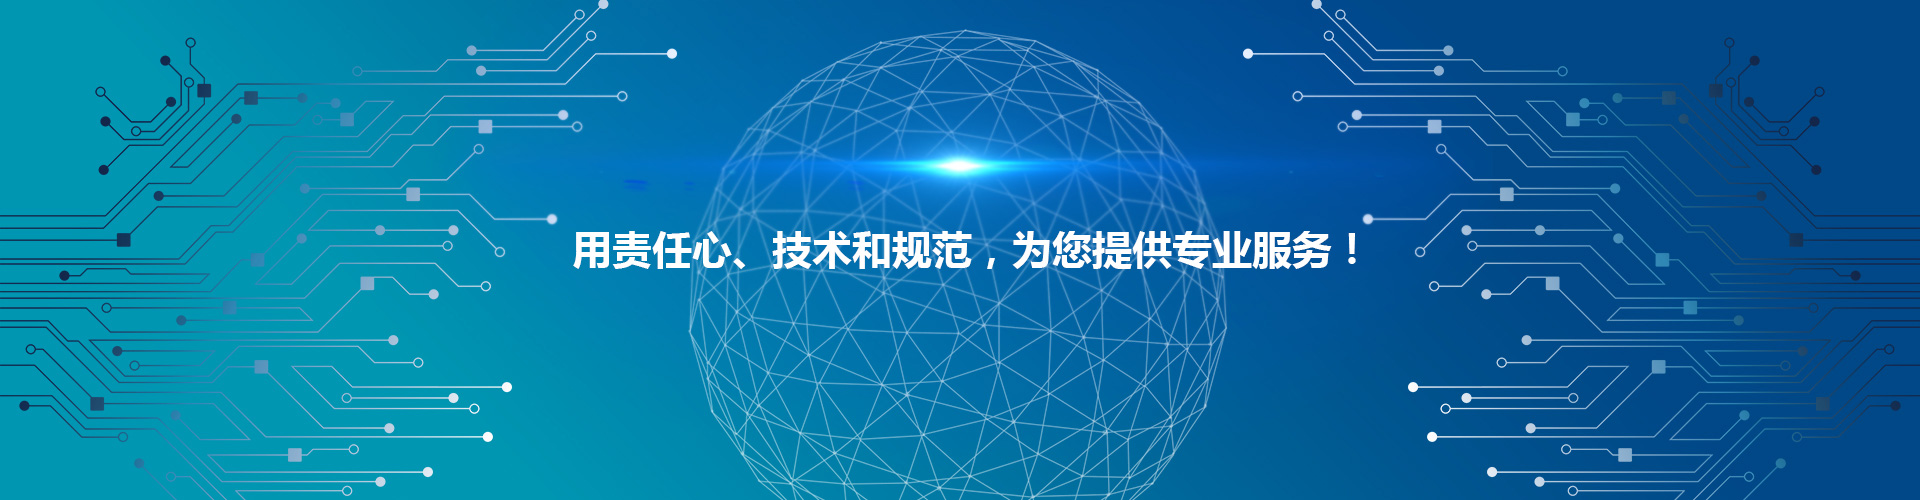 第四届中国IT服务生态峰会-极治云采电商城上线发布会